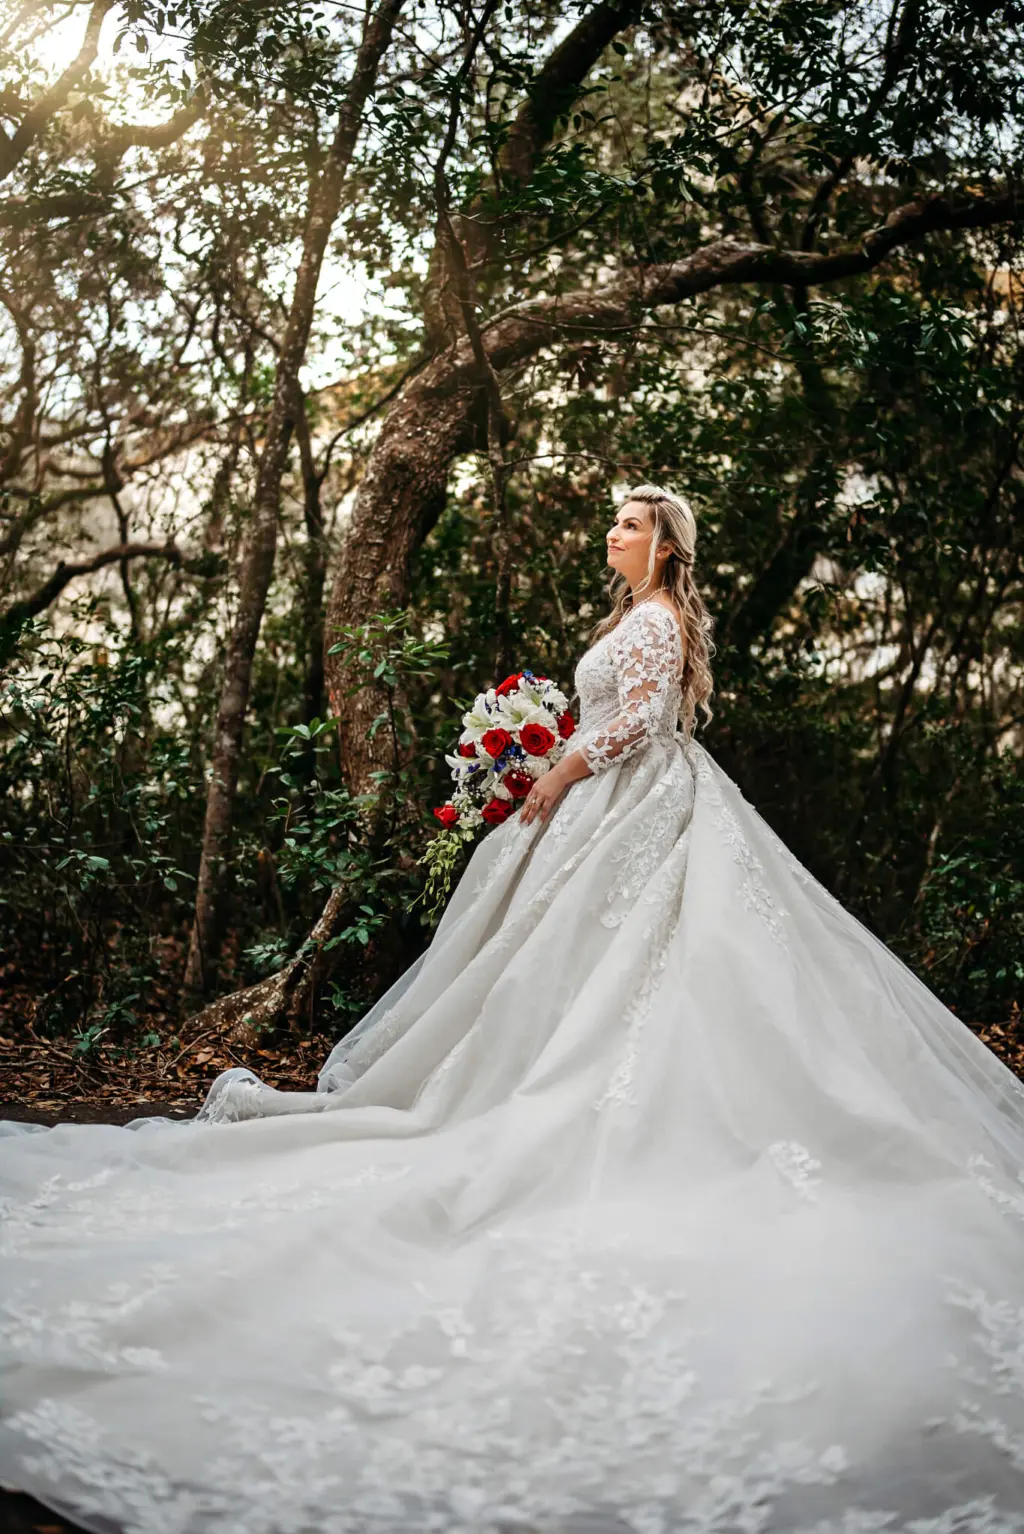 Tampa Bay Wedding Photographer Sabrina Autumn Photography